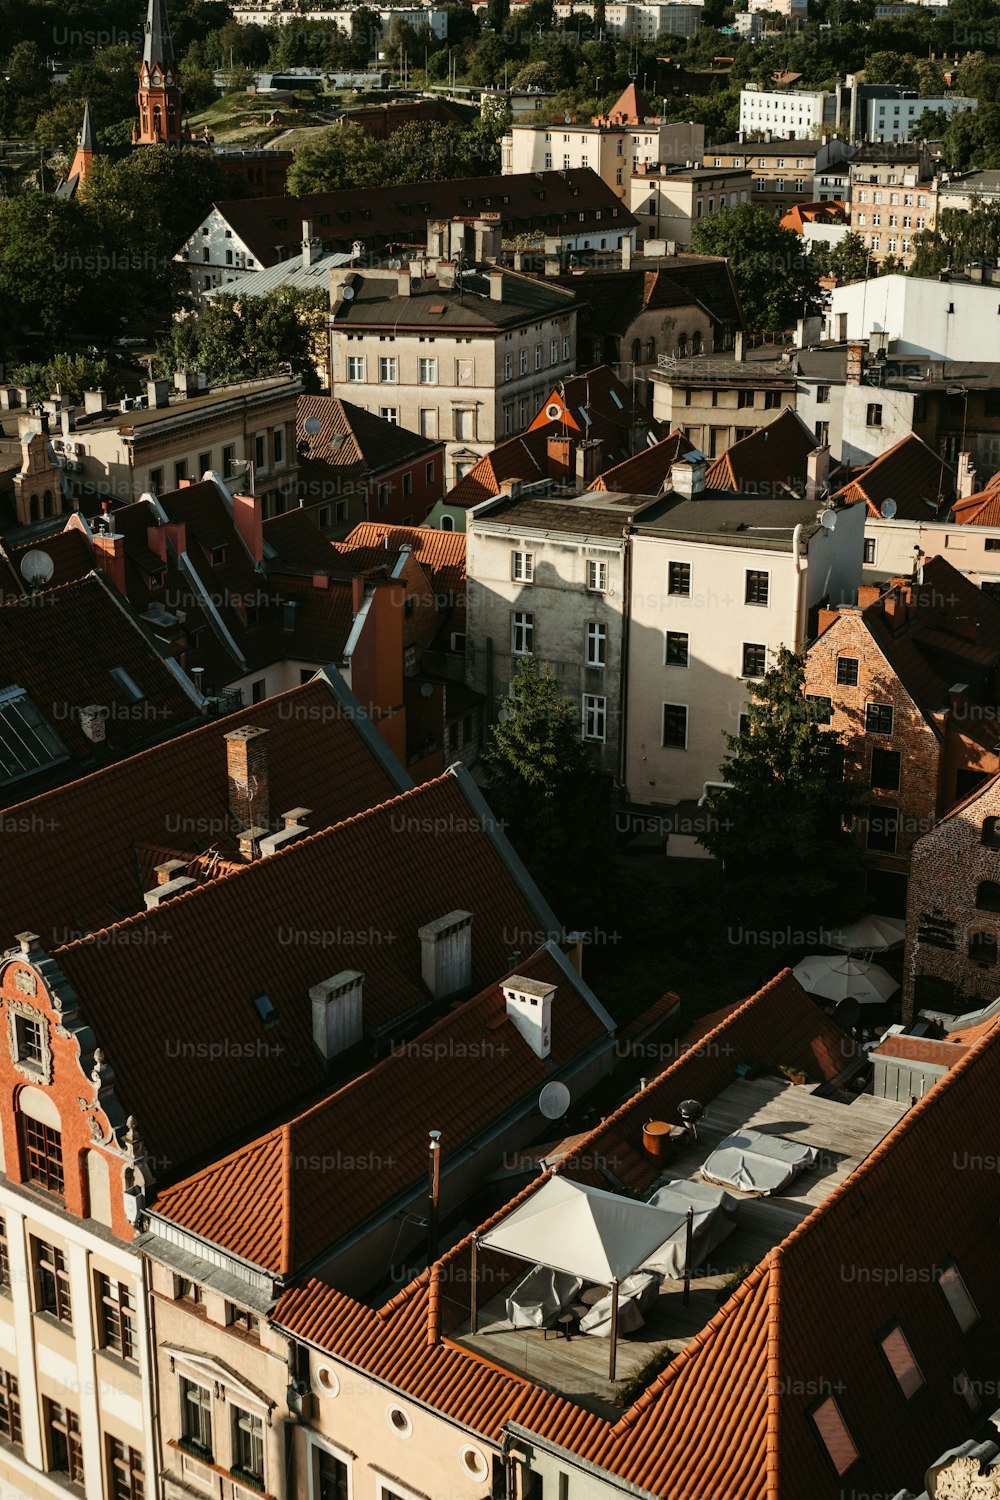 Una veduta aerea di una città con tetti ed edifici